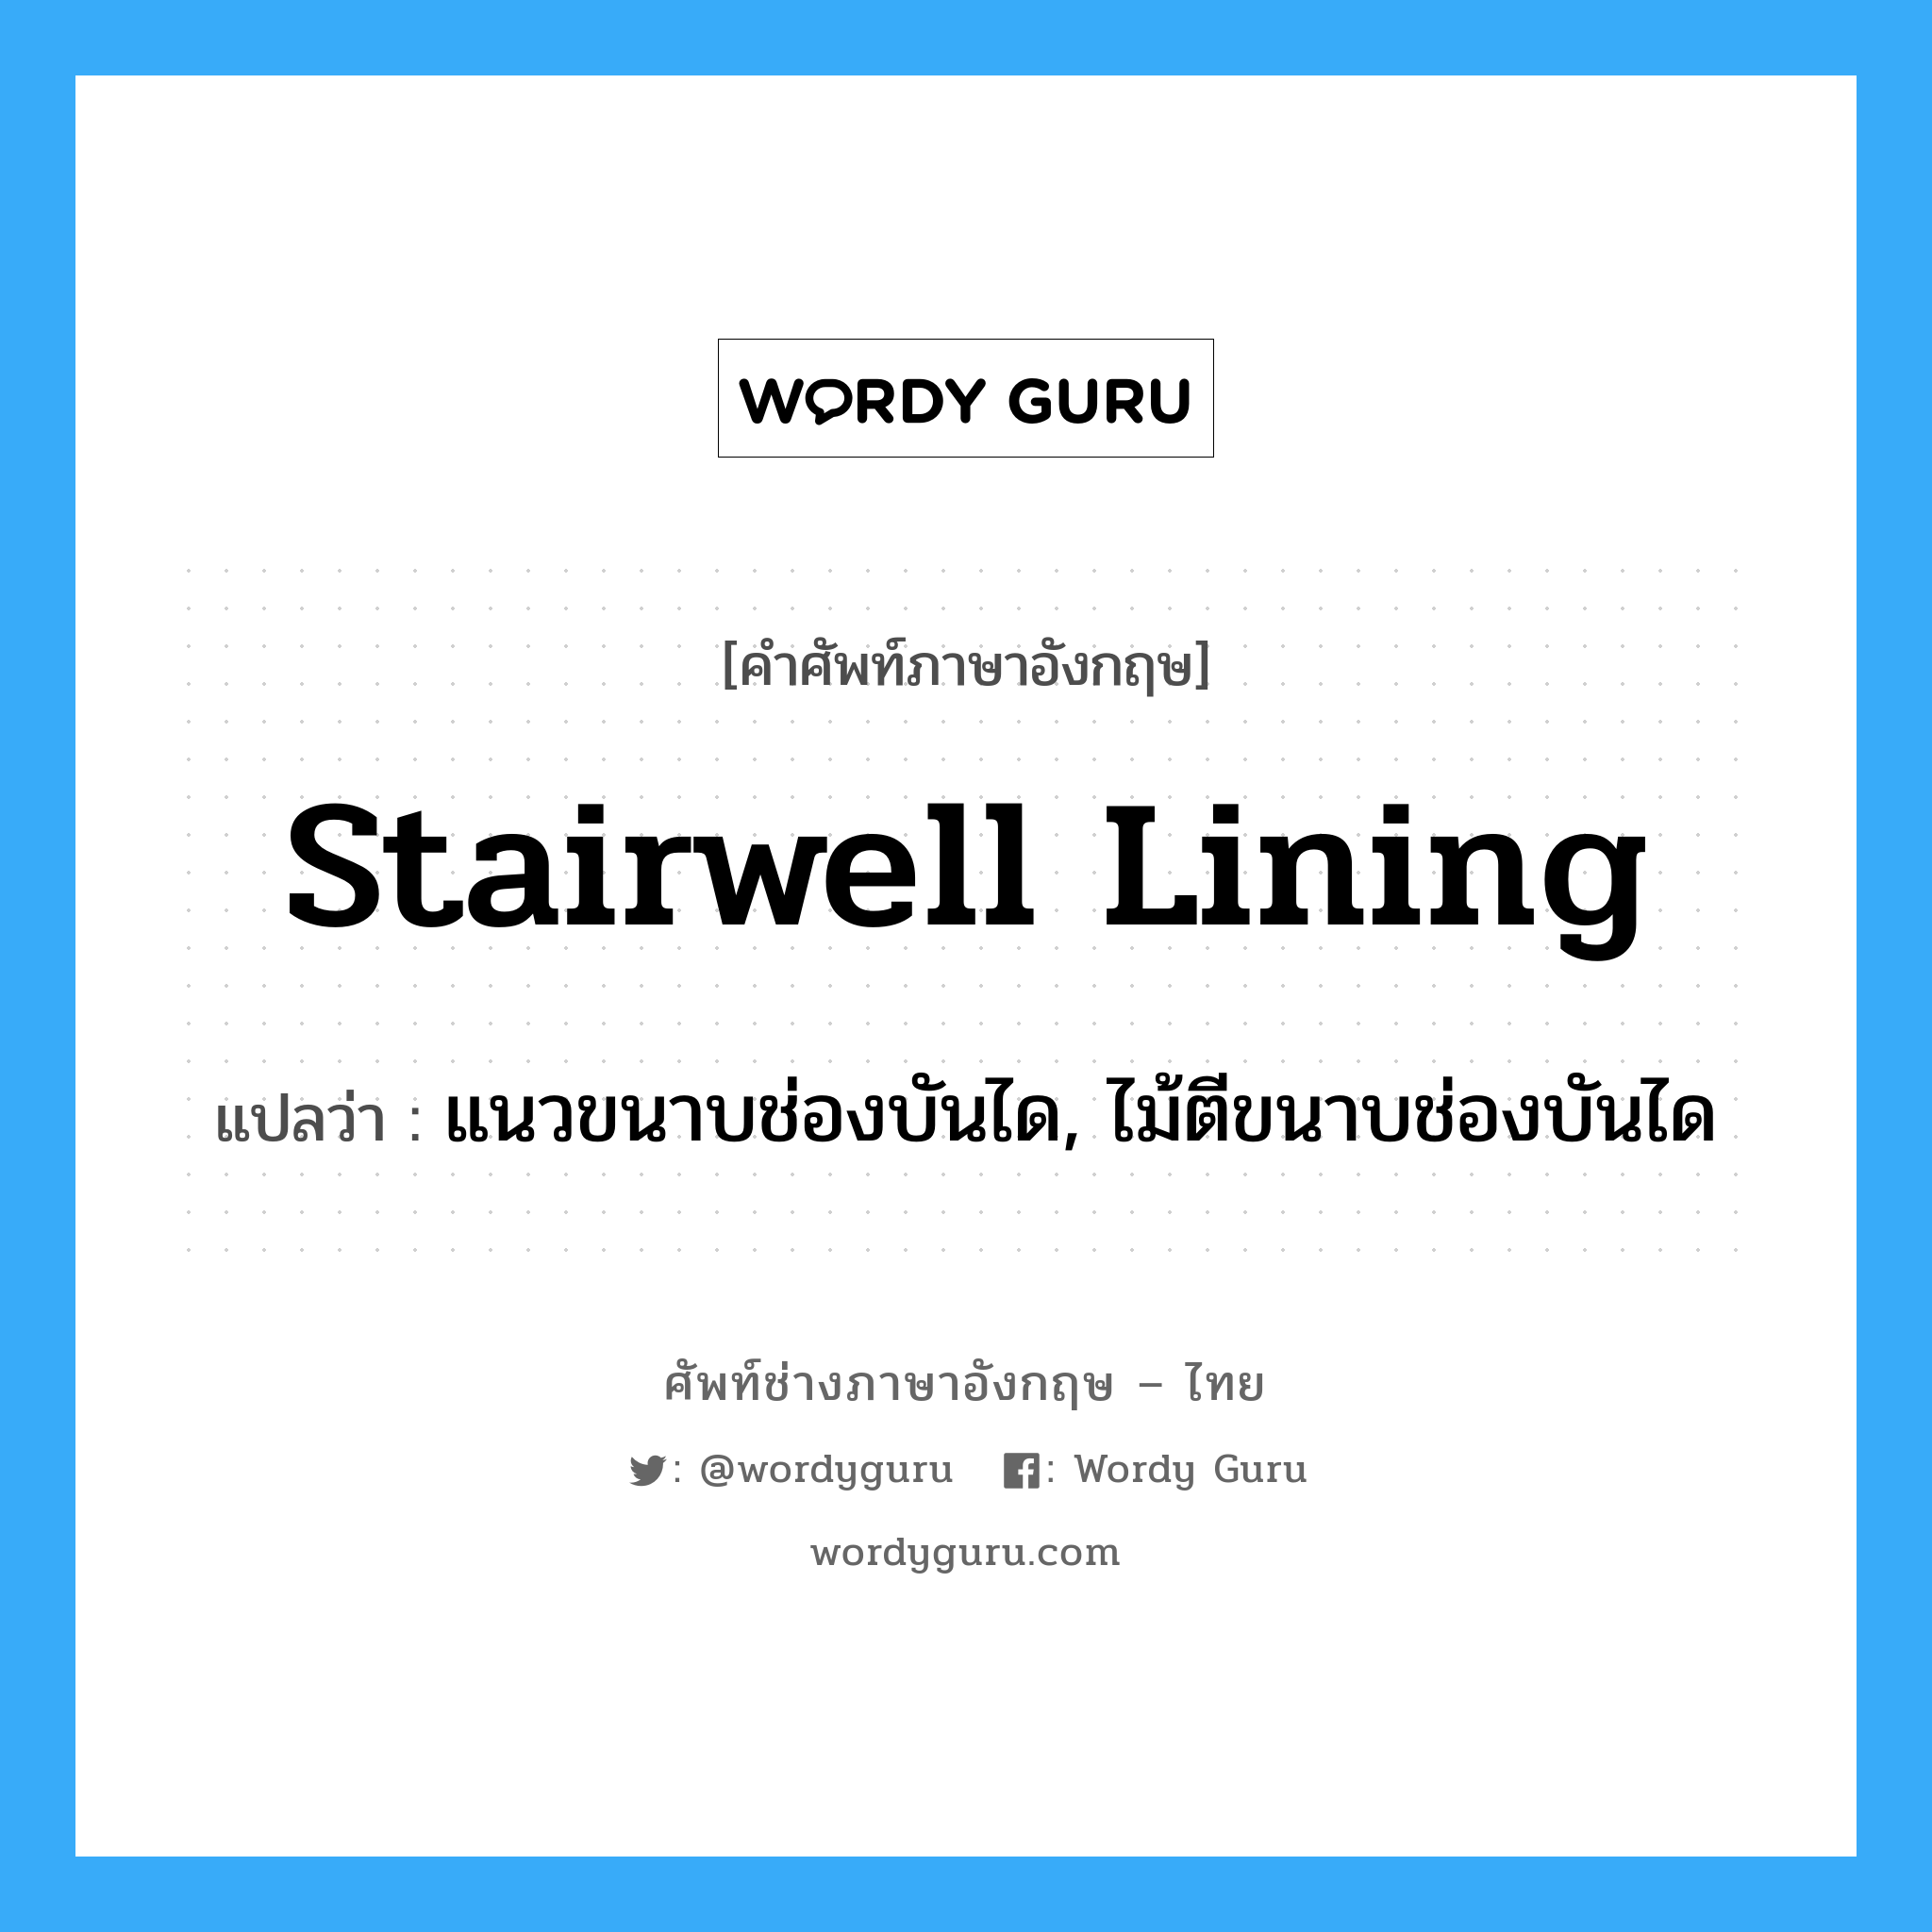 stairwell lining แปลว่า?, คำศัพท์ช่างภาษาอังกฤษ - ไทย stairwell lining คำศัพท์ภาษาอังกฤษ stairwell lining แปลว่า แนวขนาบช่องบันได, ไม้ตีขนาบช่องบันได